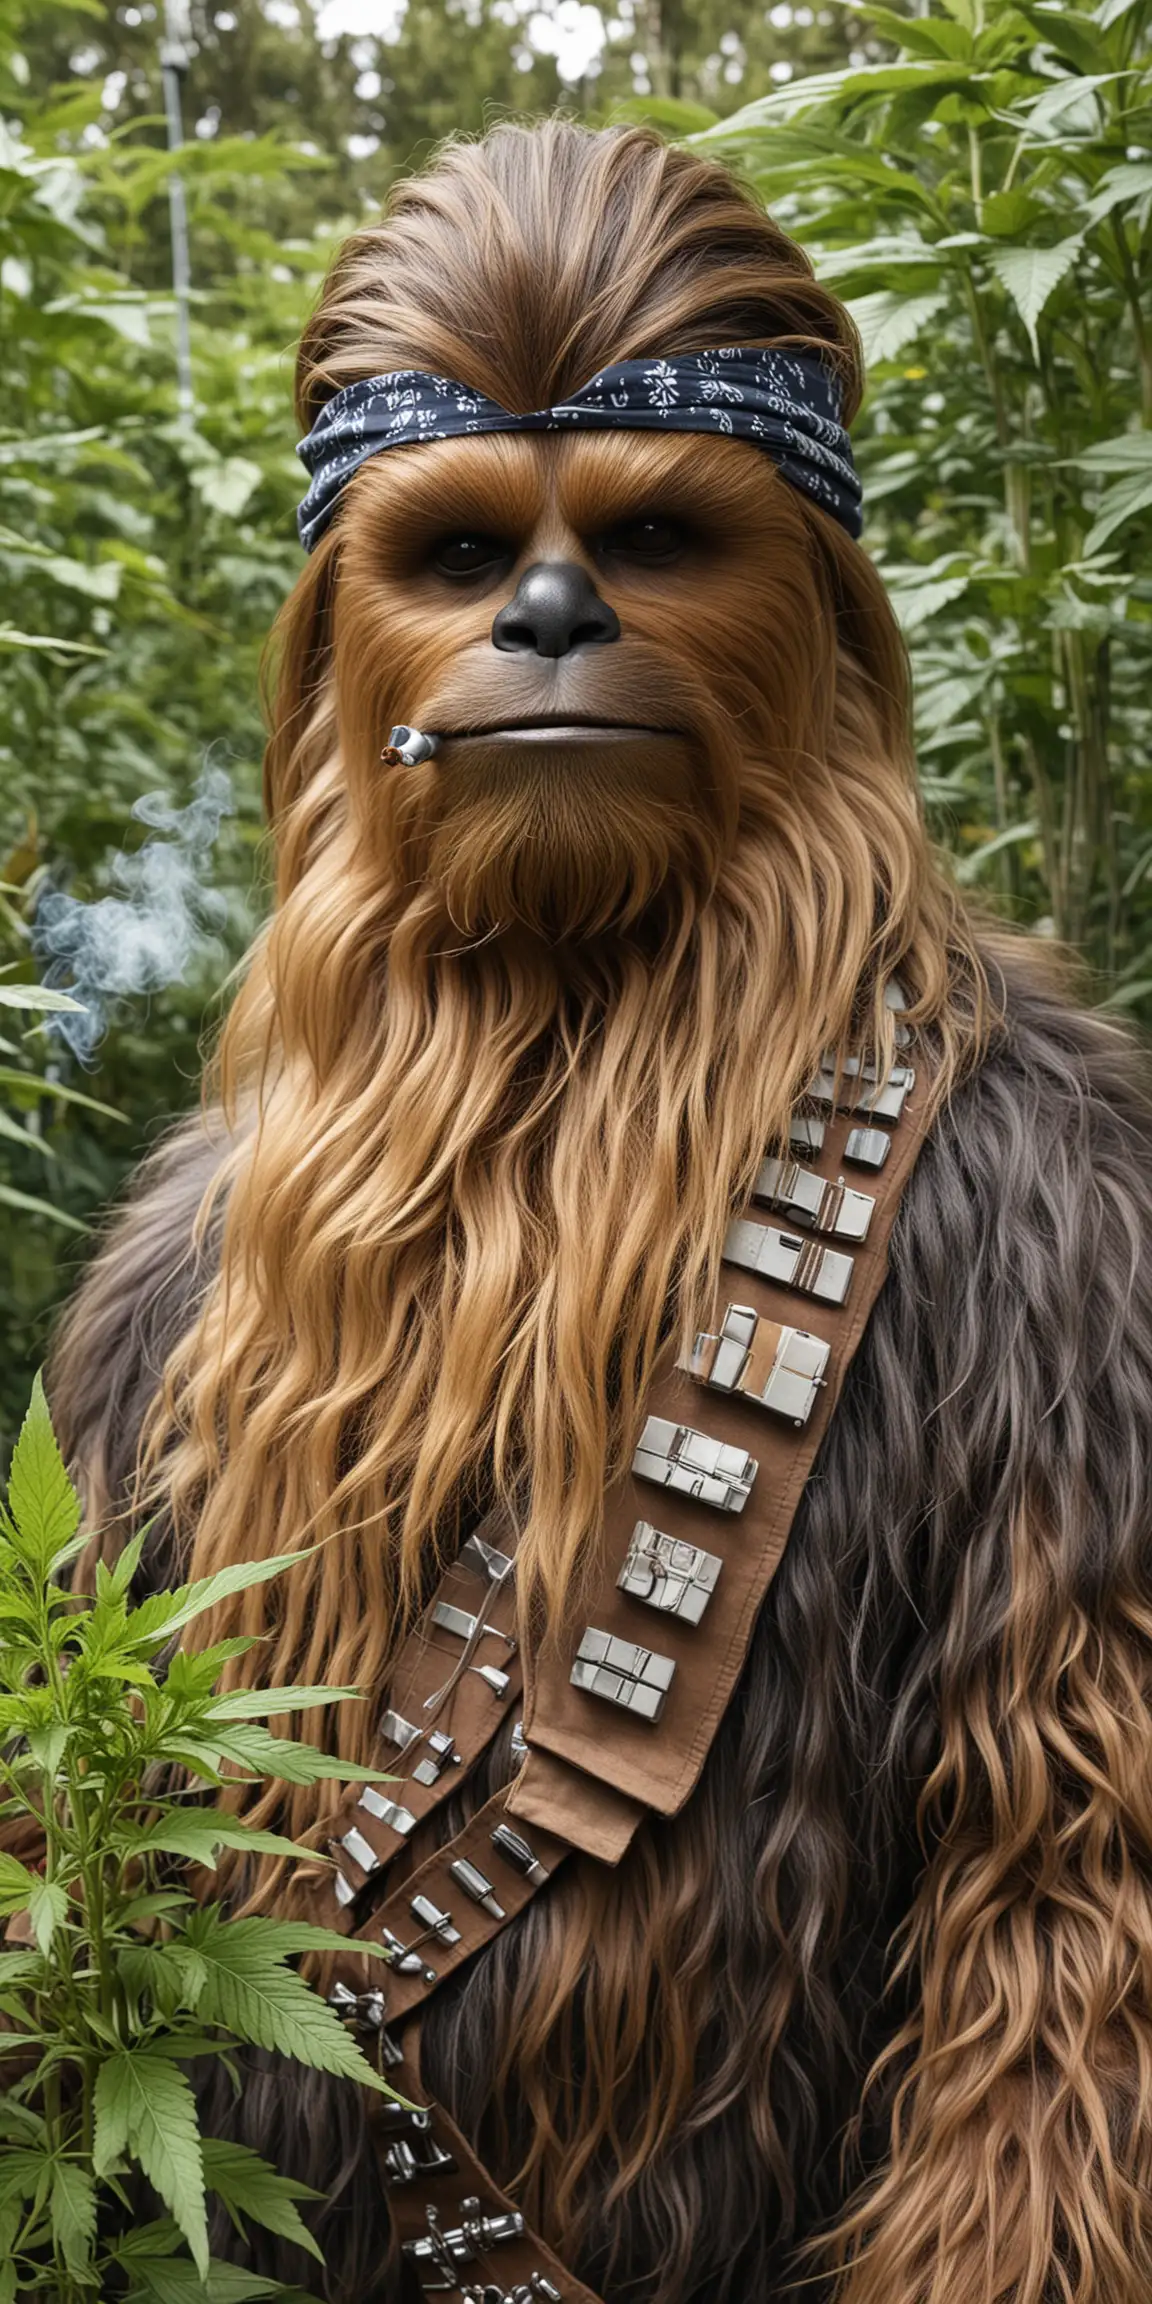 Chewbacca Wearing a Bandana Smoking in a Cannabis Grow